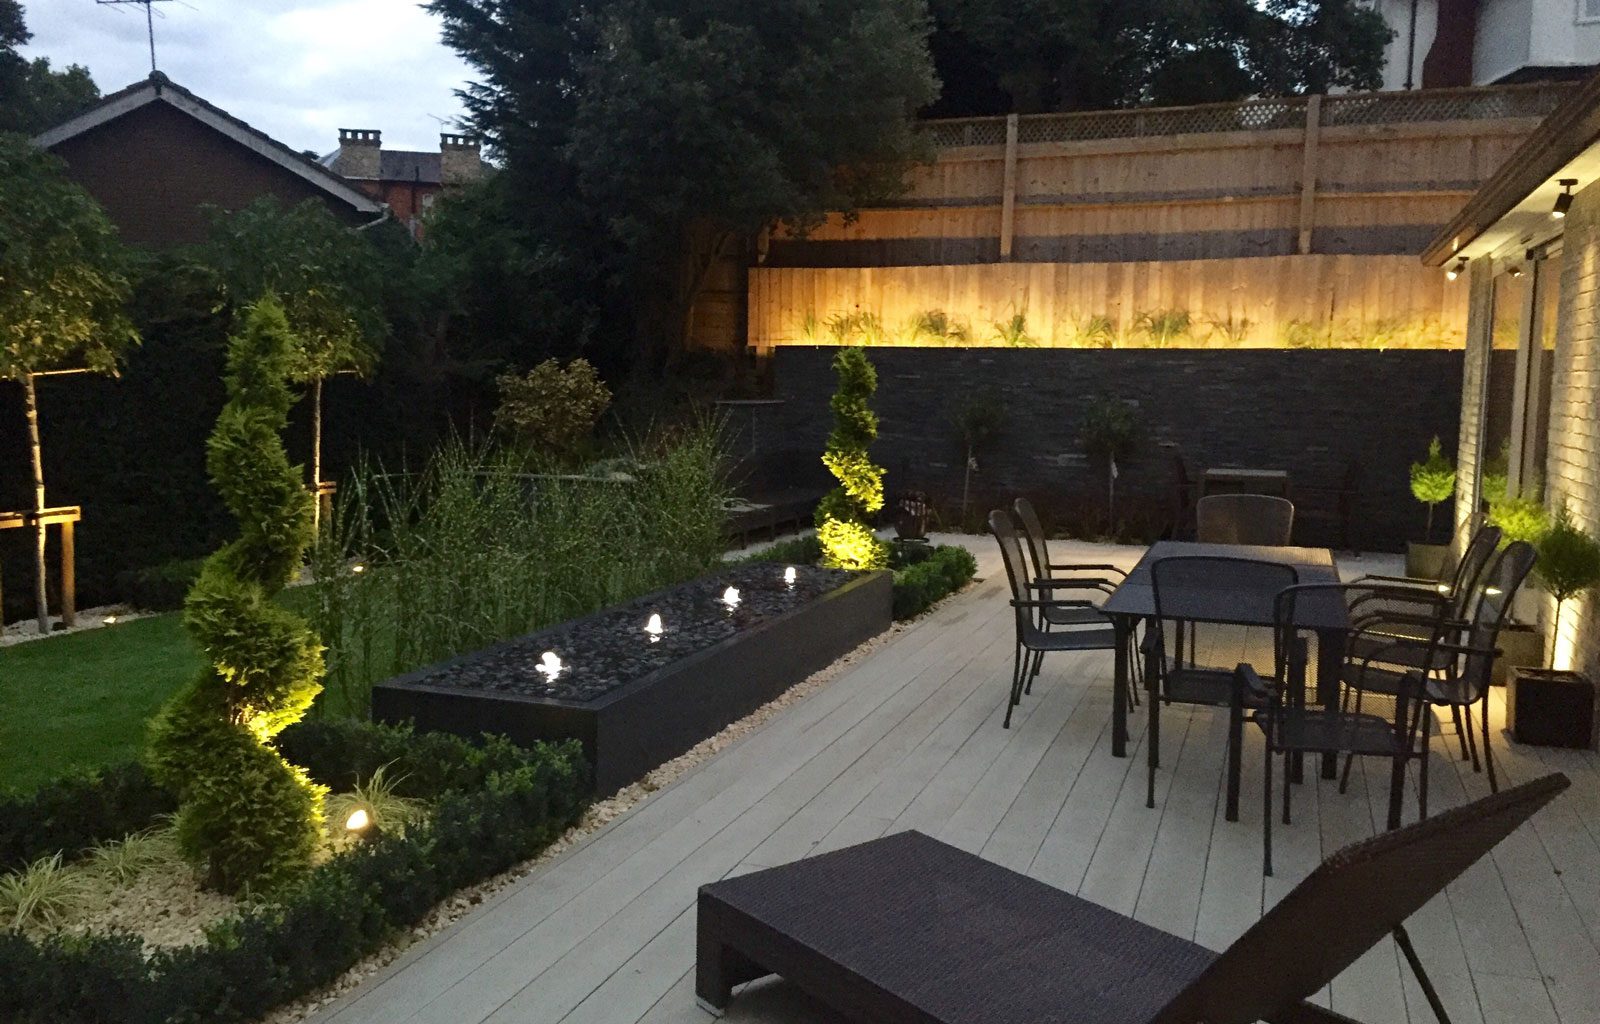 landscaping garden design contemporary garden lighting